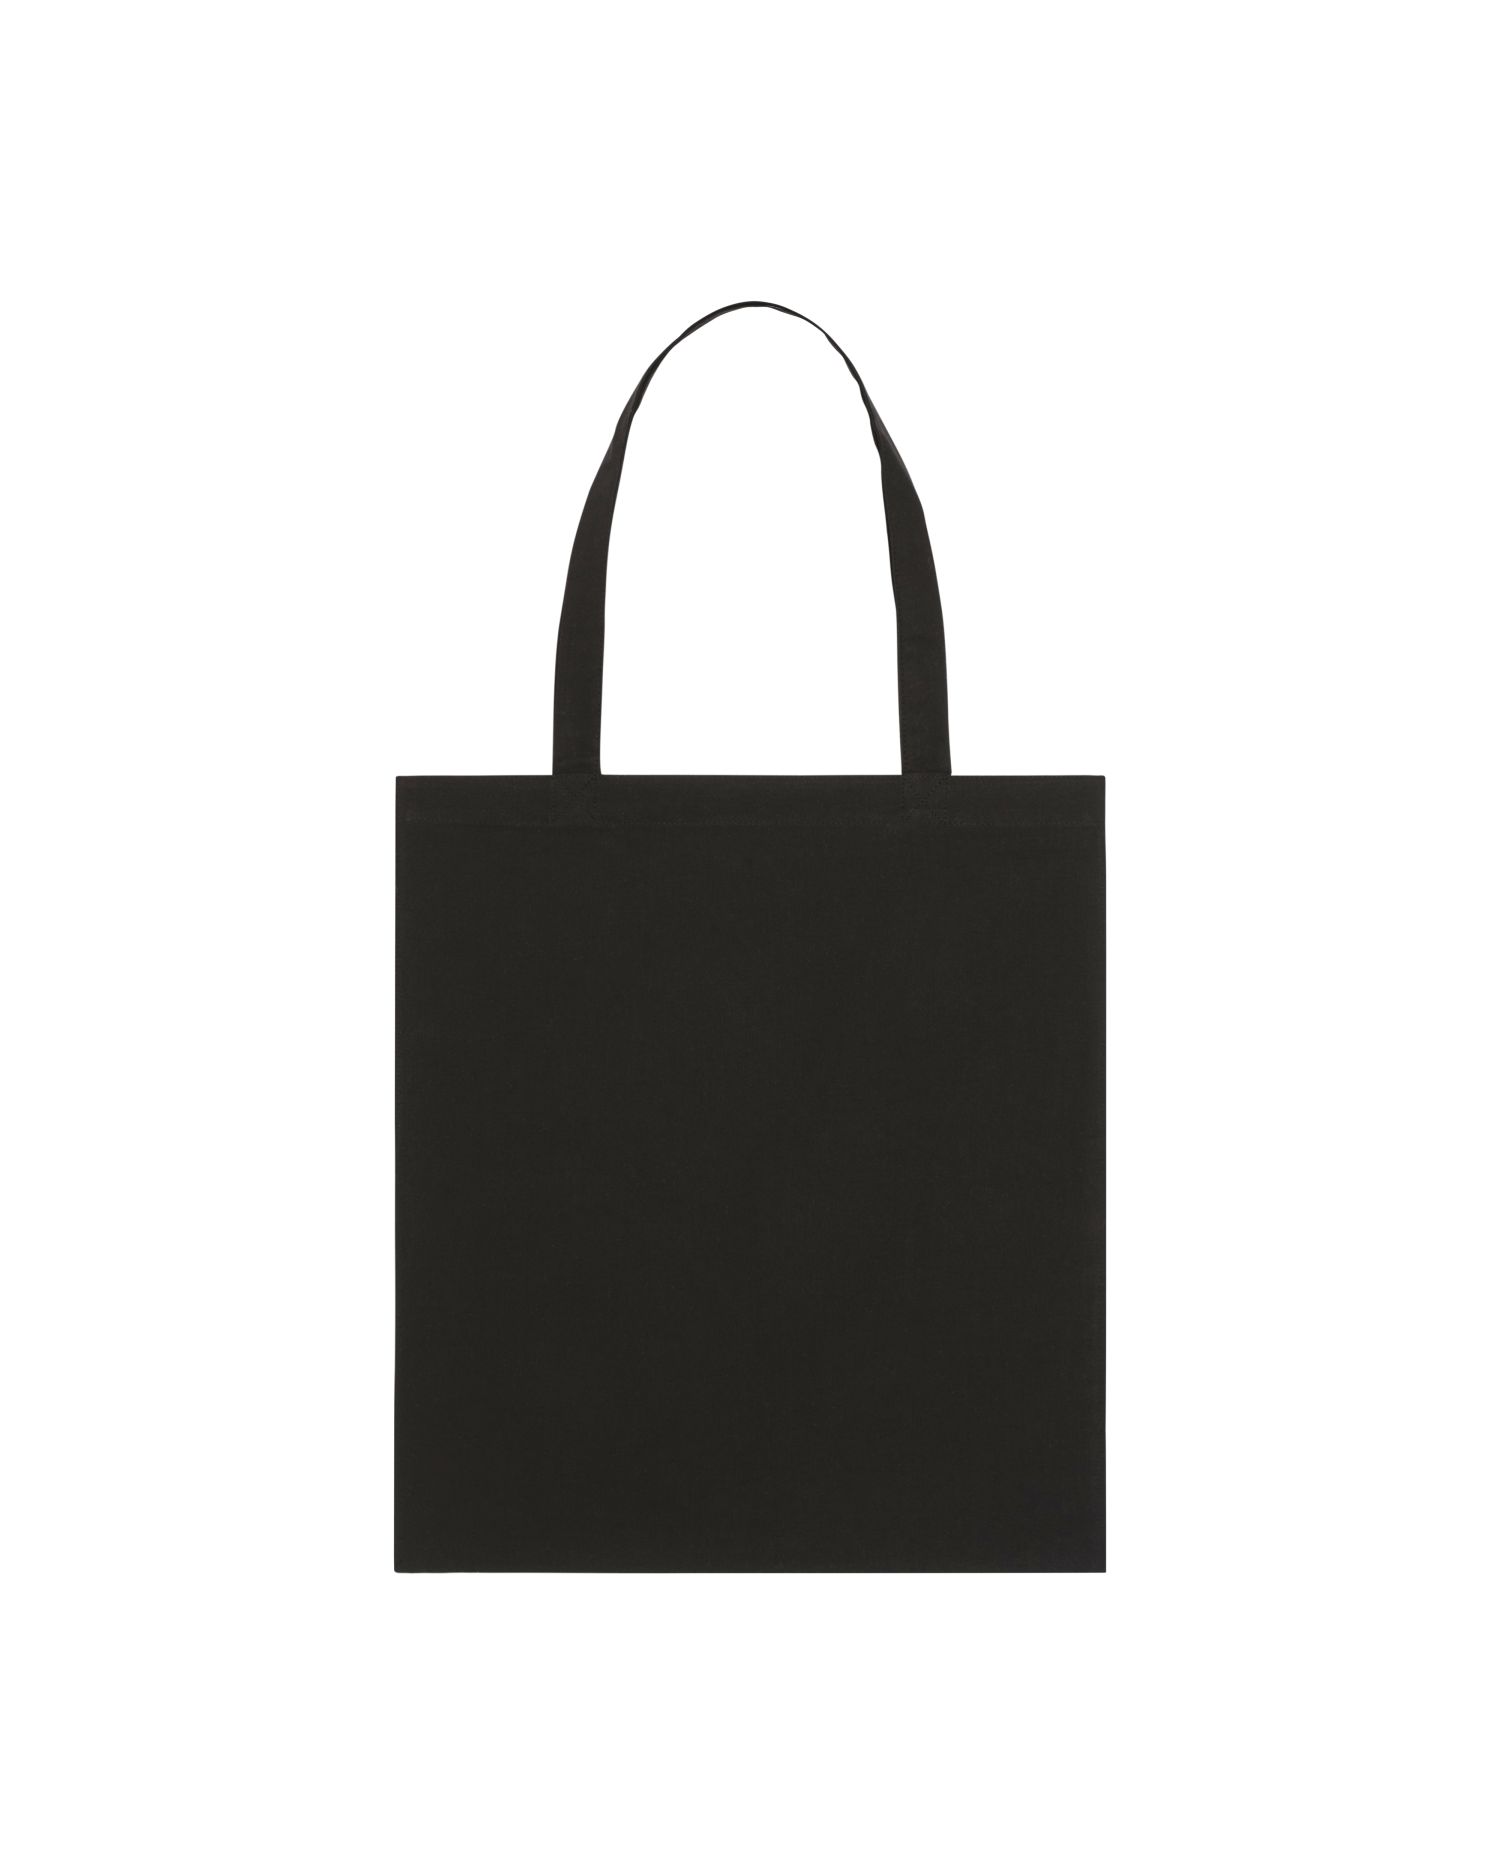  Light Tote Bag in Farbe Black